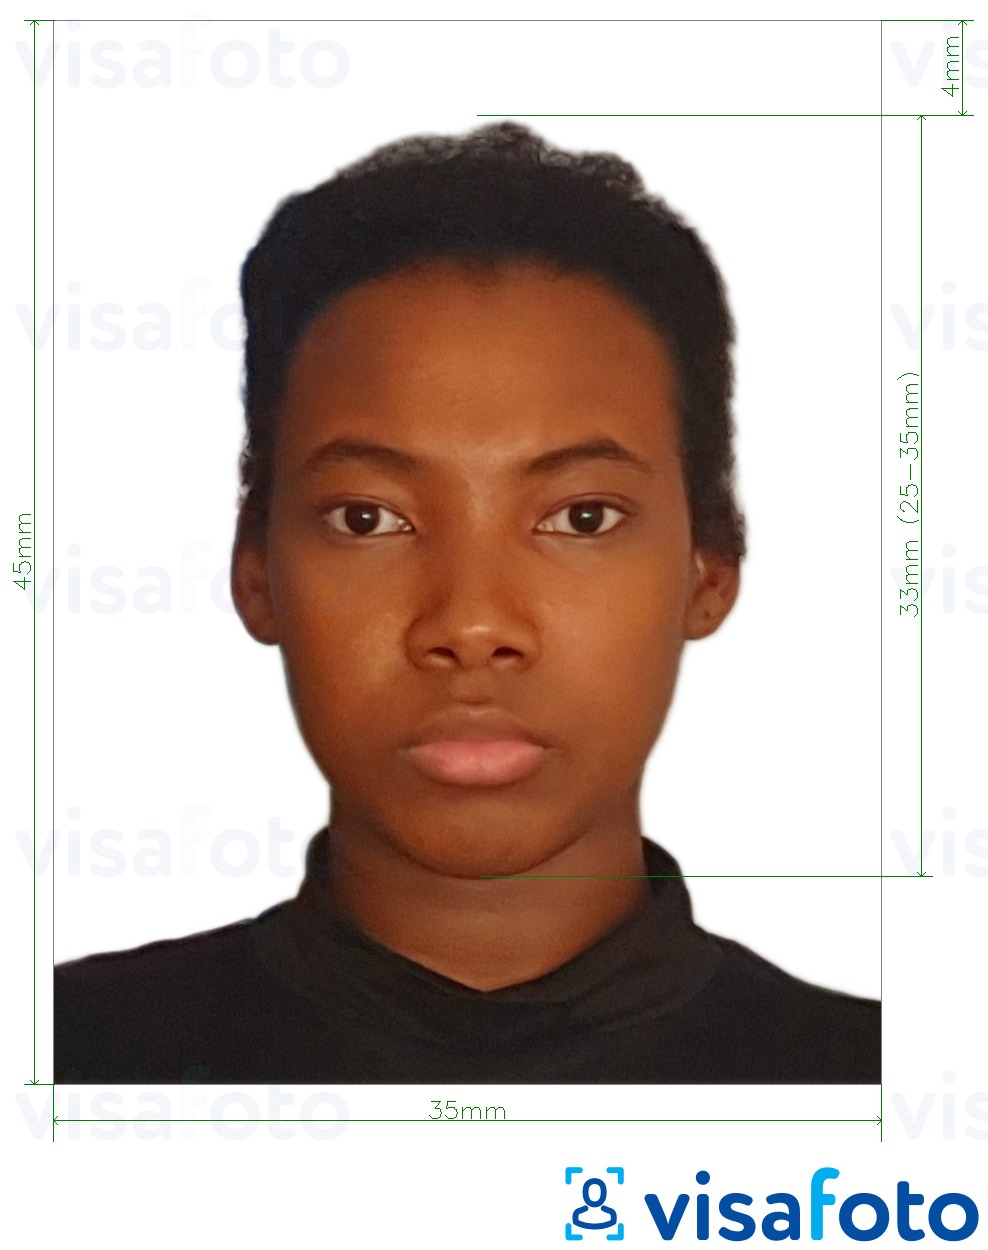 نمونه ی یک عکس برای گذرنامه جامائیکا 35x45 میلی متر (3.5x4.5 سانتی متر) با مشخصات دقیق